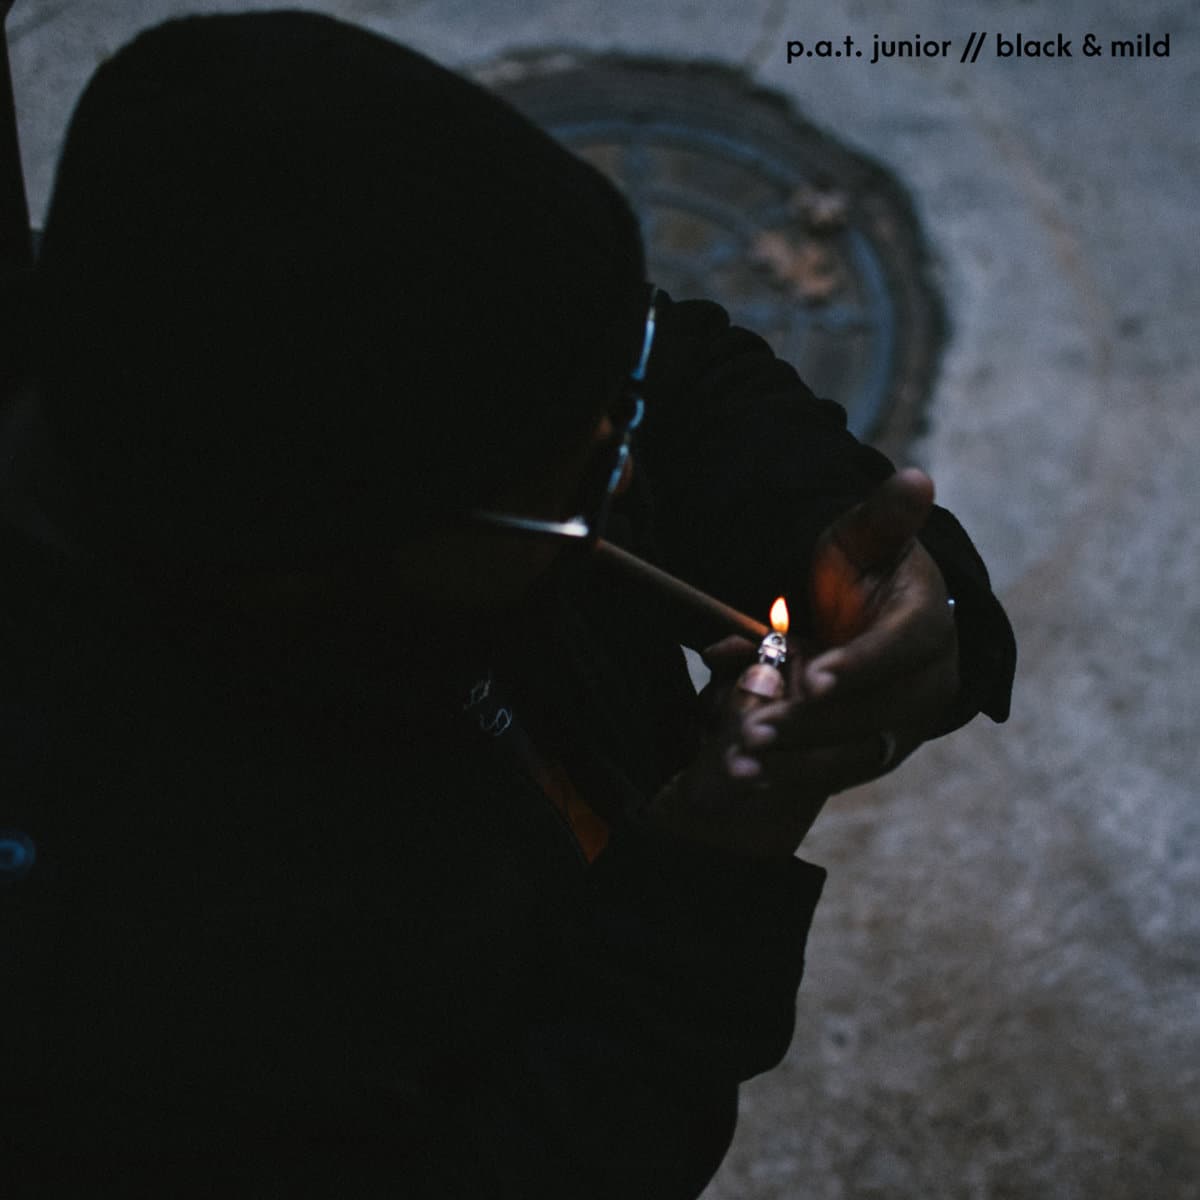 Pat Junior - "Black & Mild" (Release)